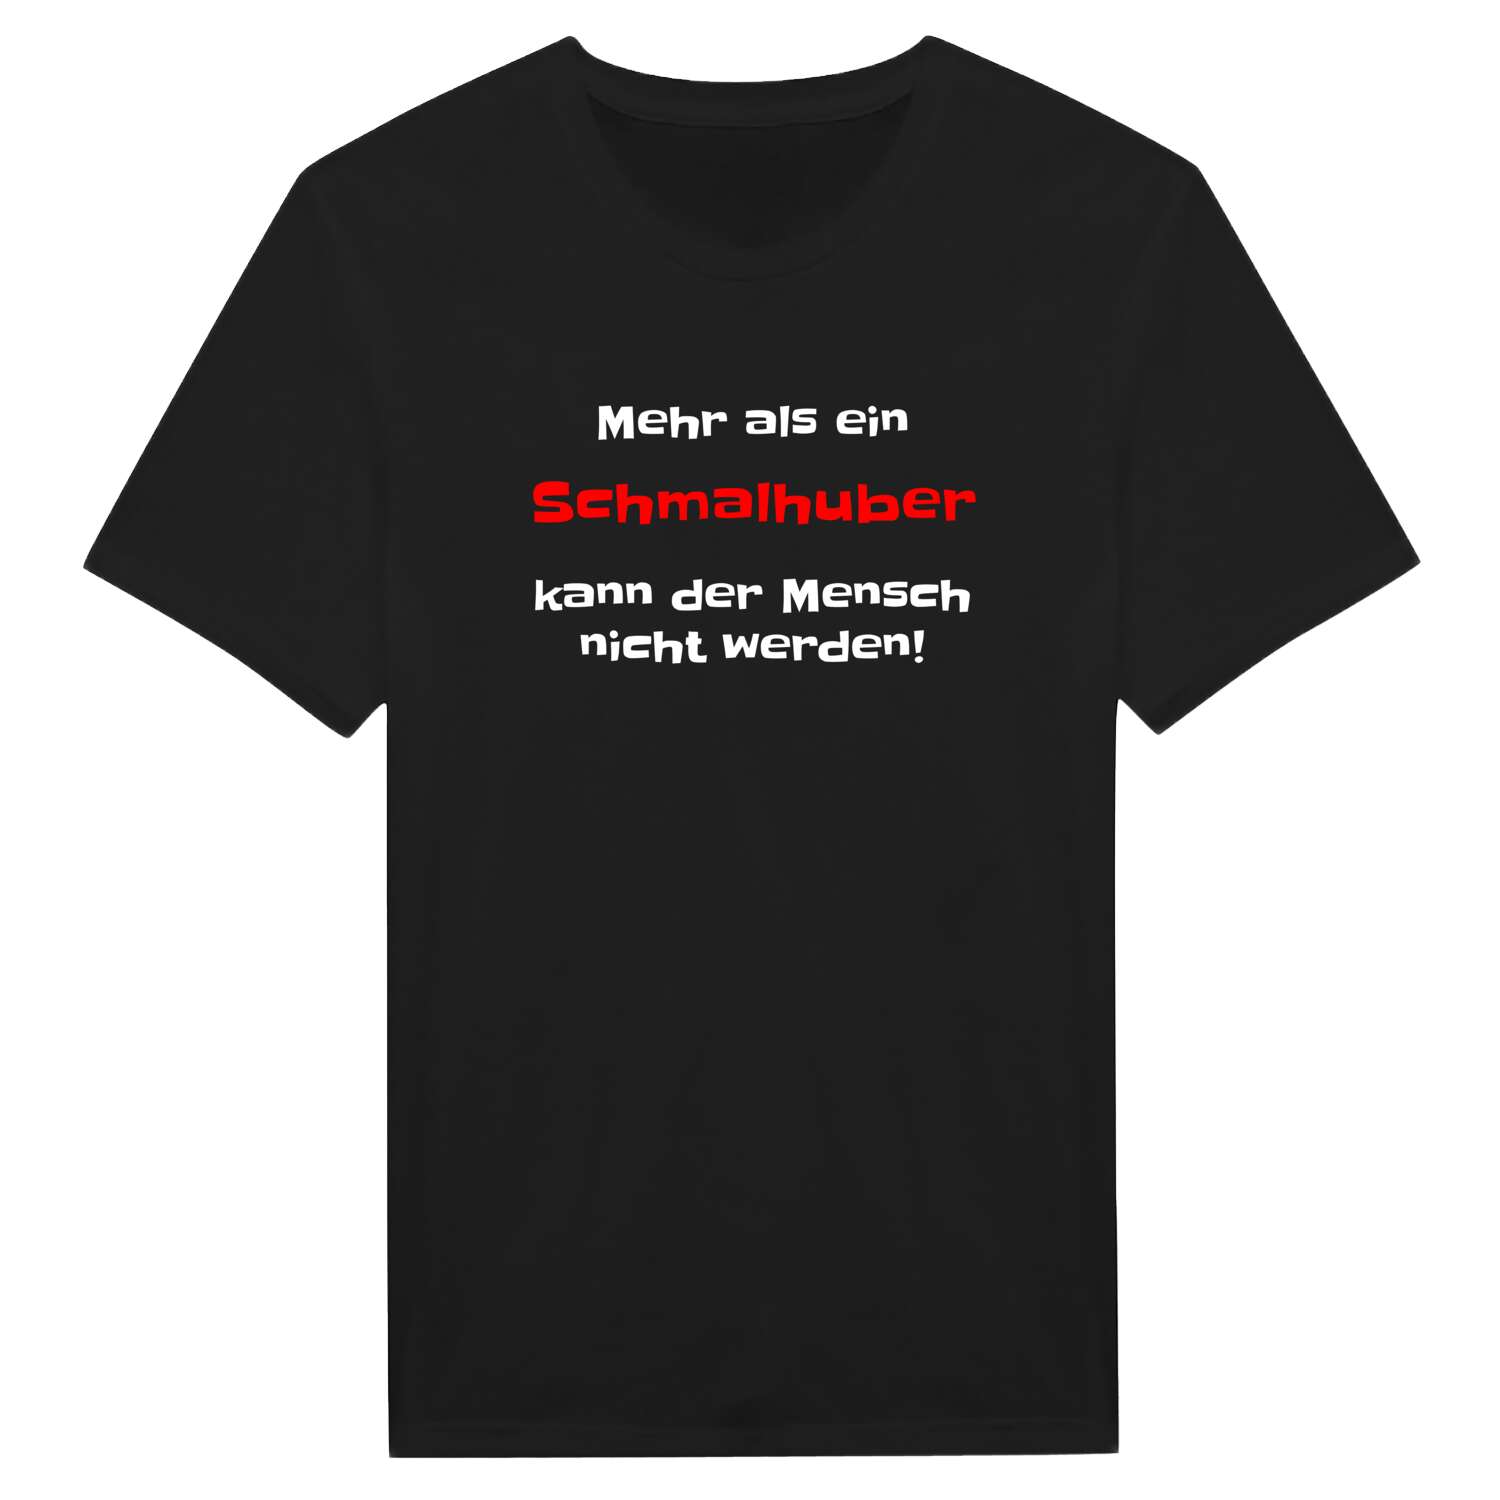 Schmalhub T-Shirt »Mehr als ein«